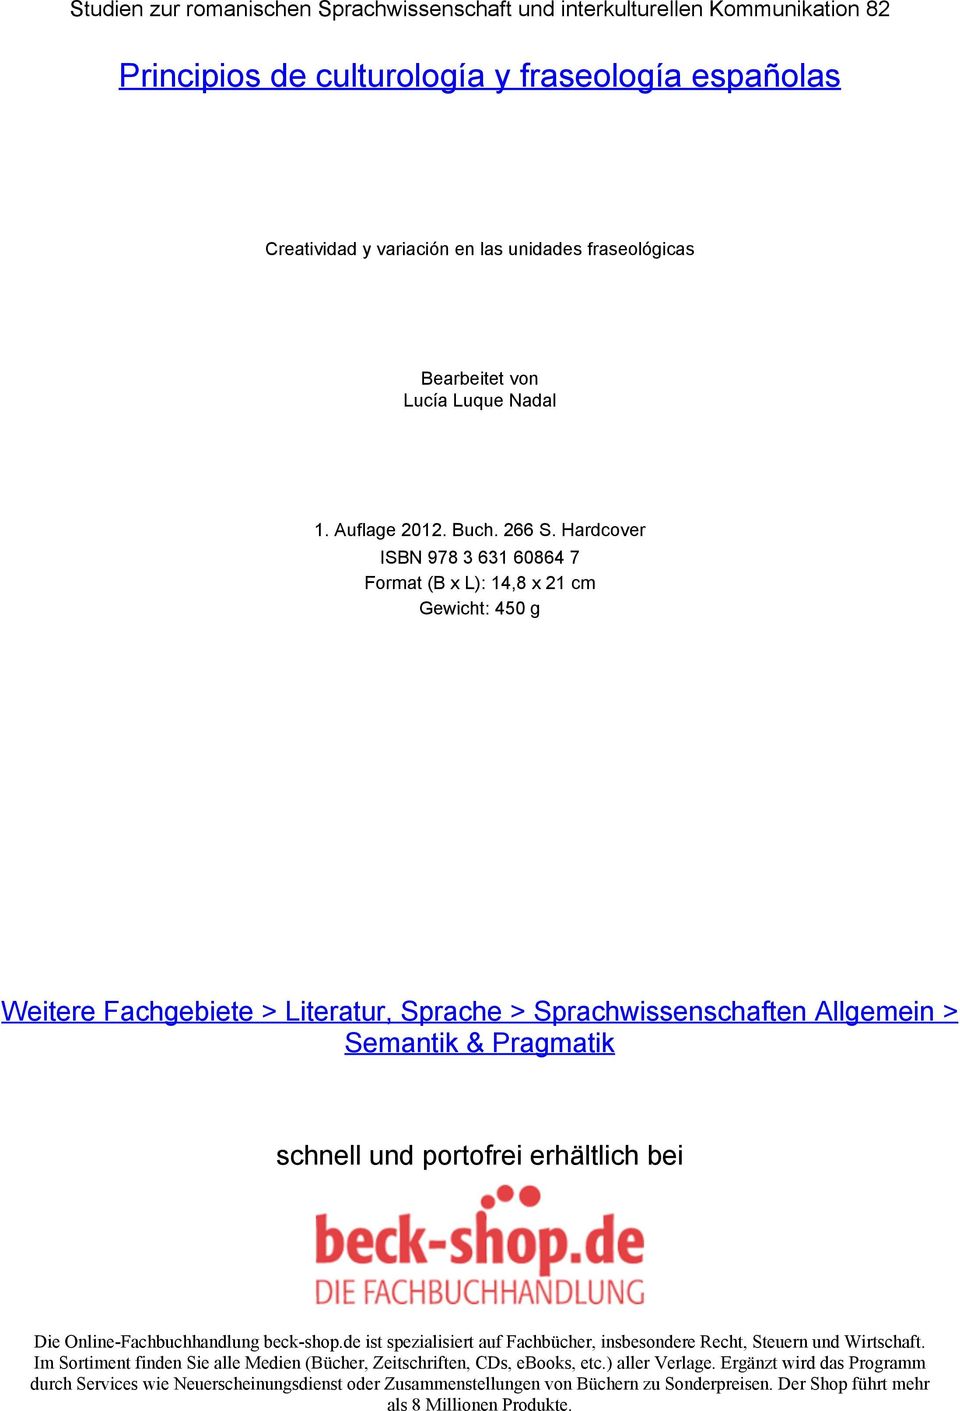 Hardcover ISBN 978 3 631 60864 7 Format (B x L): 14,8 x 21 cm Gewicht: 450 g Weitere Fachgebiete > Literatur, Sprache > Sprachwissenschaften Allgemein > Semantik & Pragmatik schnell und portofrei